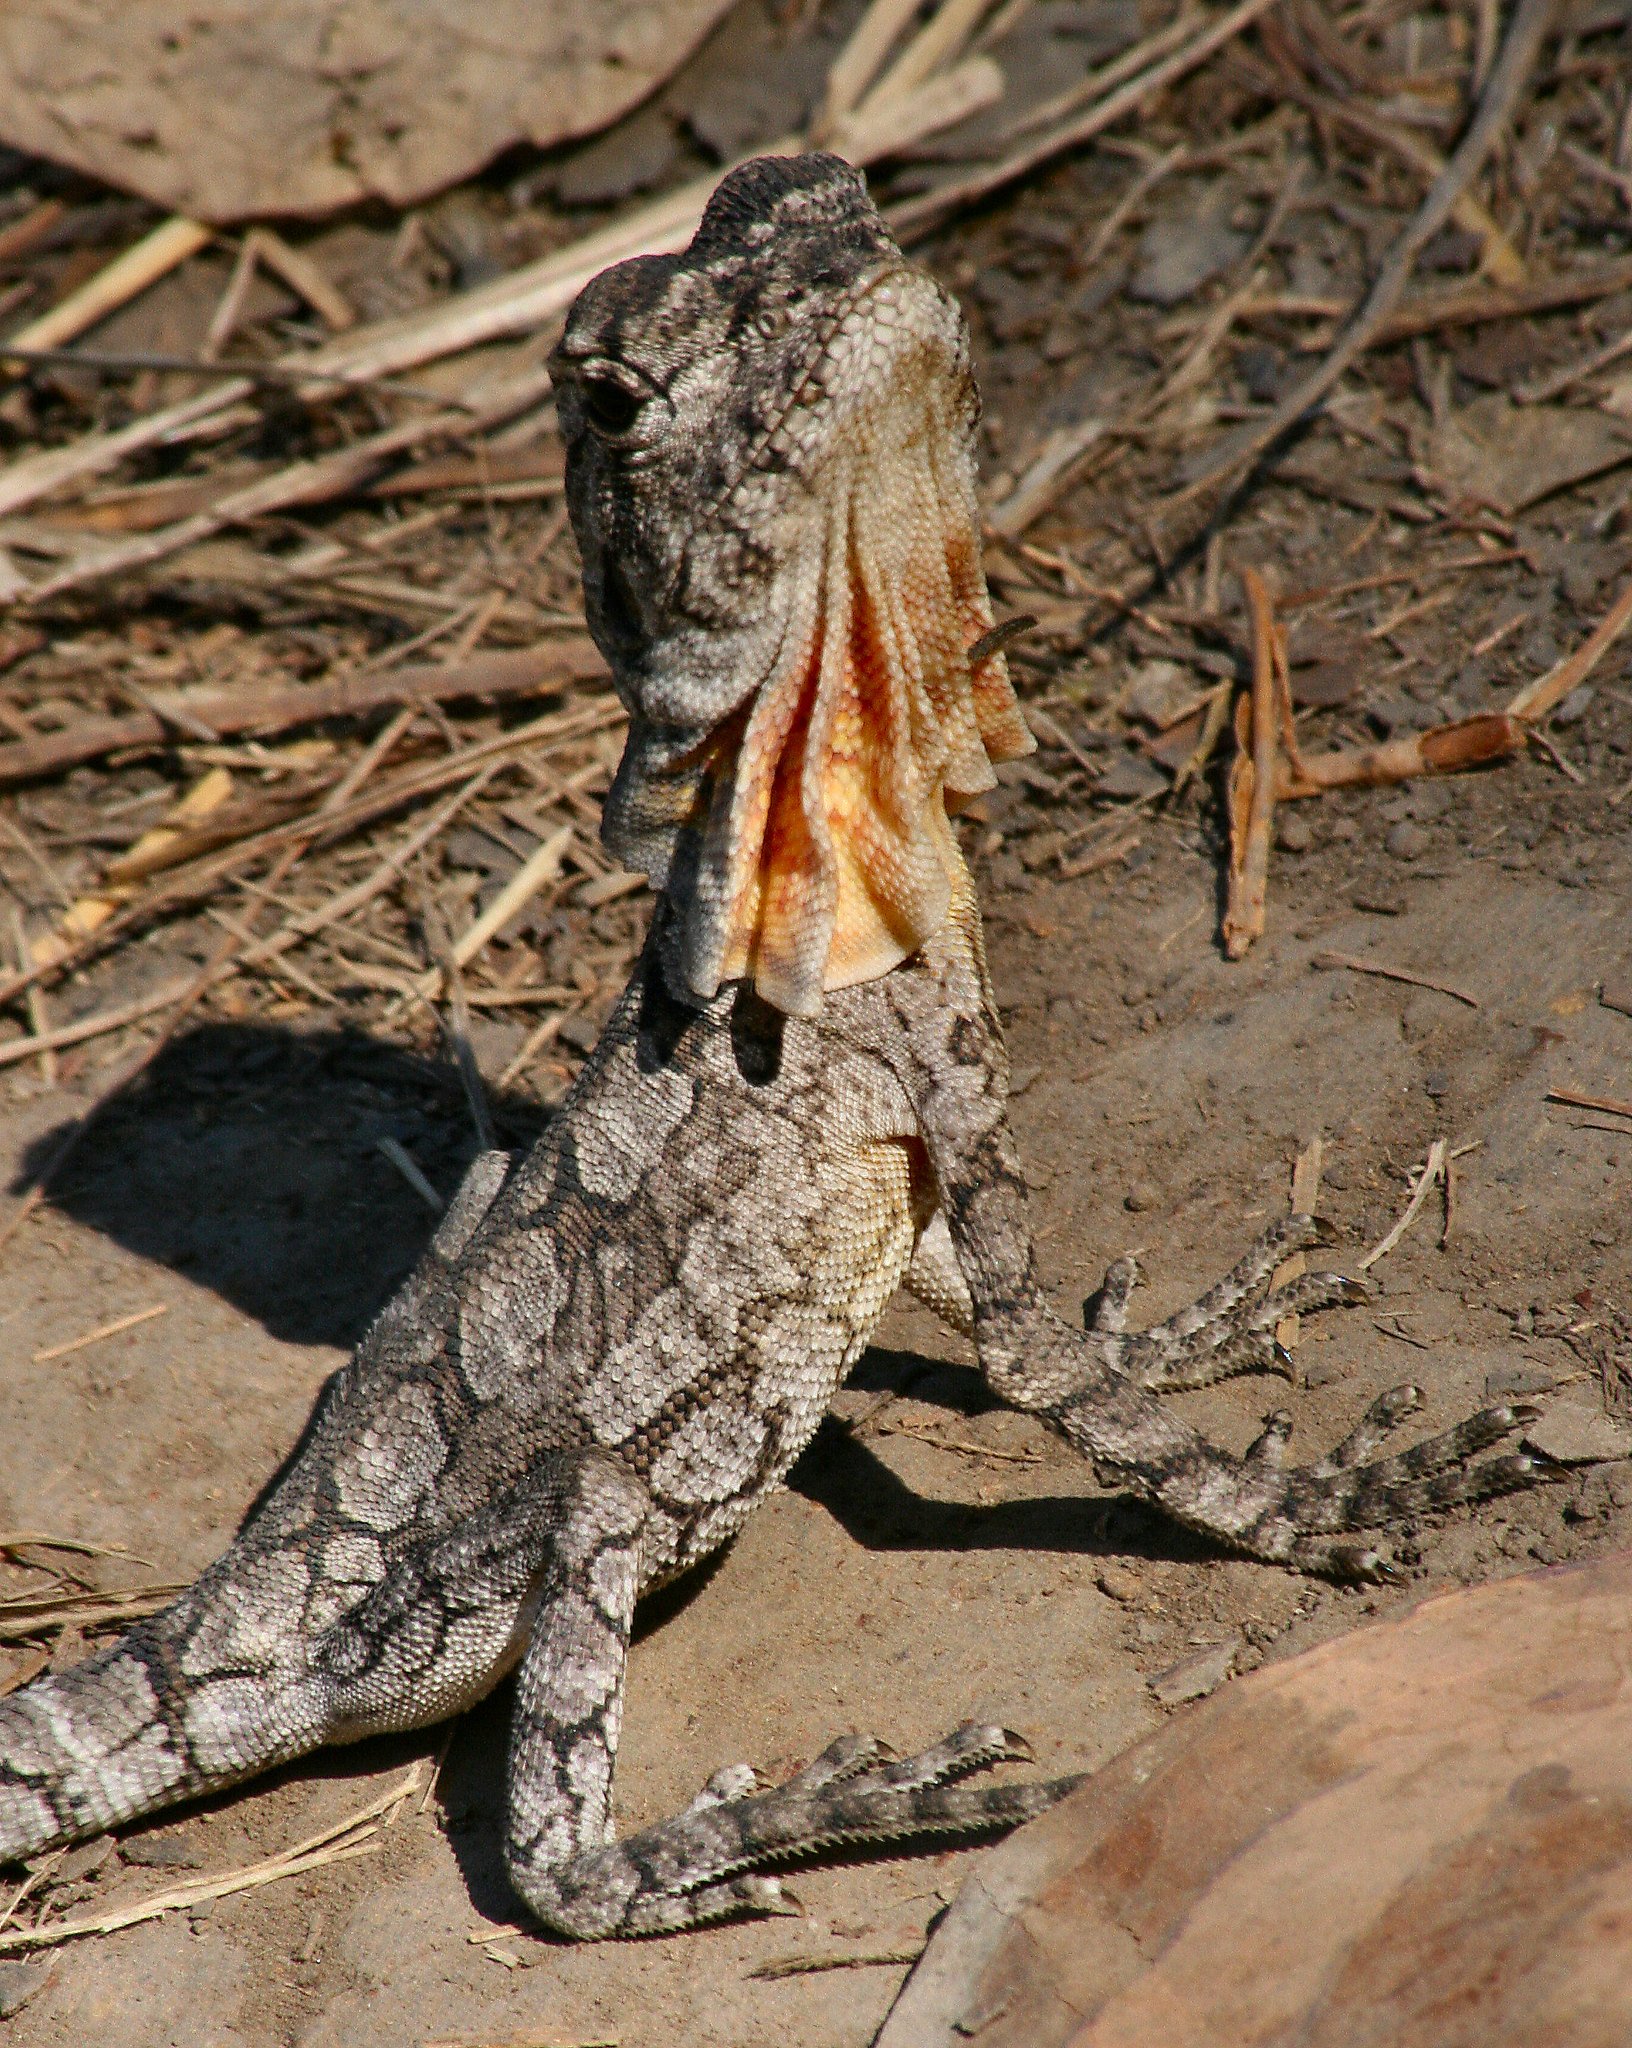 australian frilled lizards